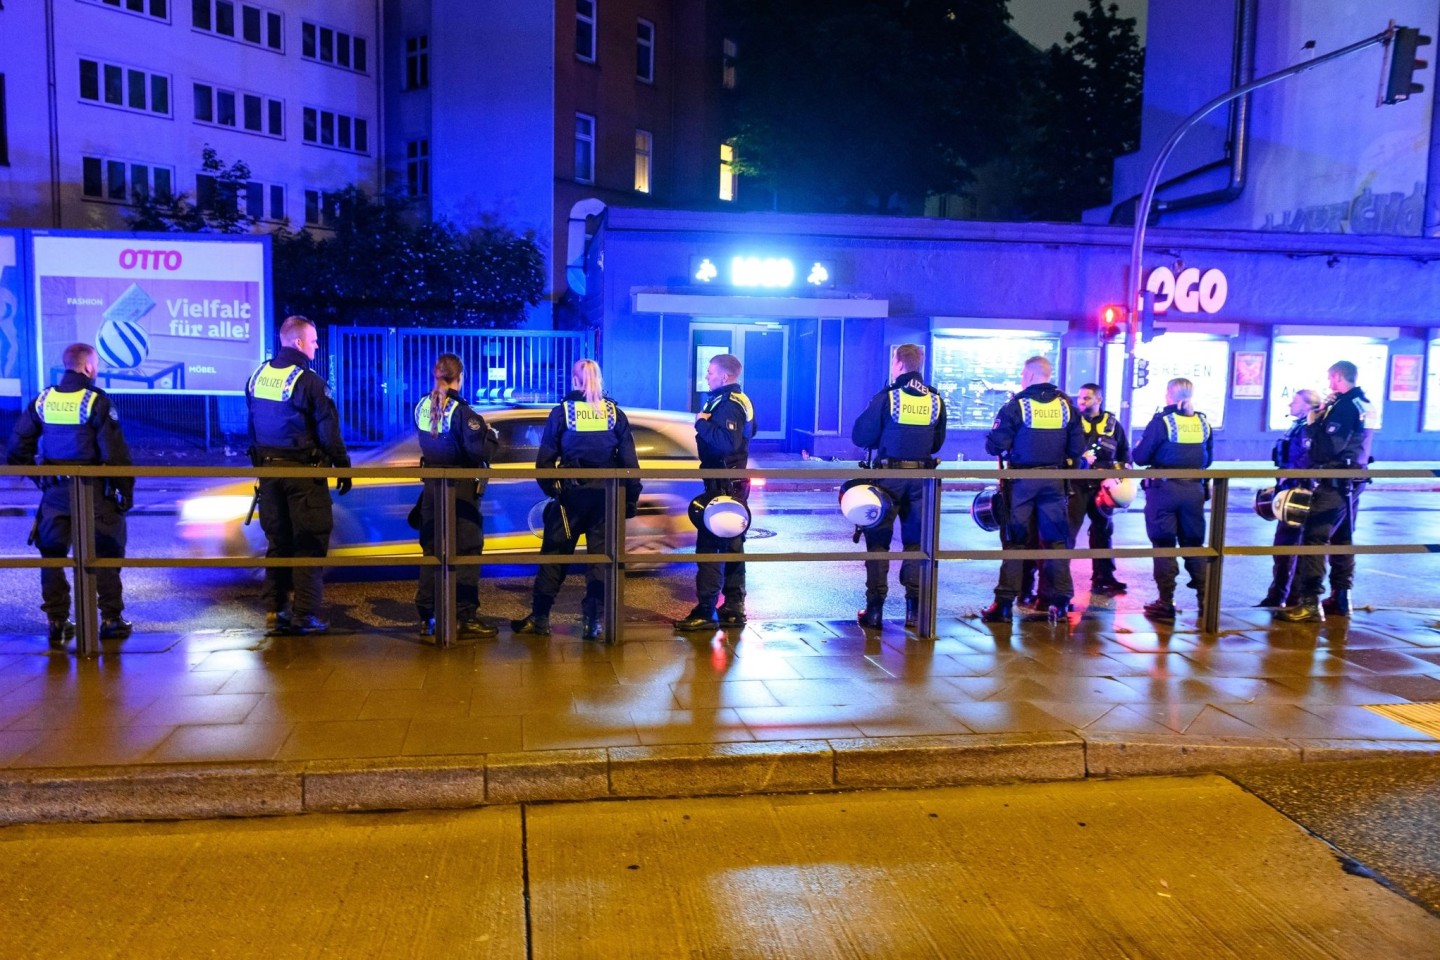 Bereitschaftspolizisten am Einsatzort vor einem Hamburger Musikclub. Zwischen 100 und 150 Personen waren an der Schlägerei beteiligt.